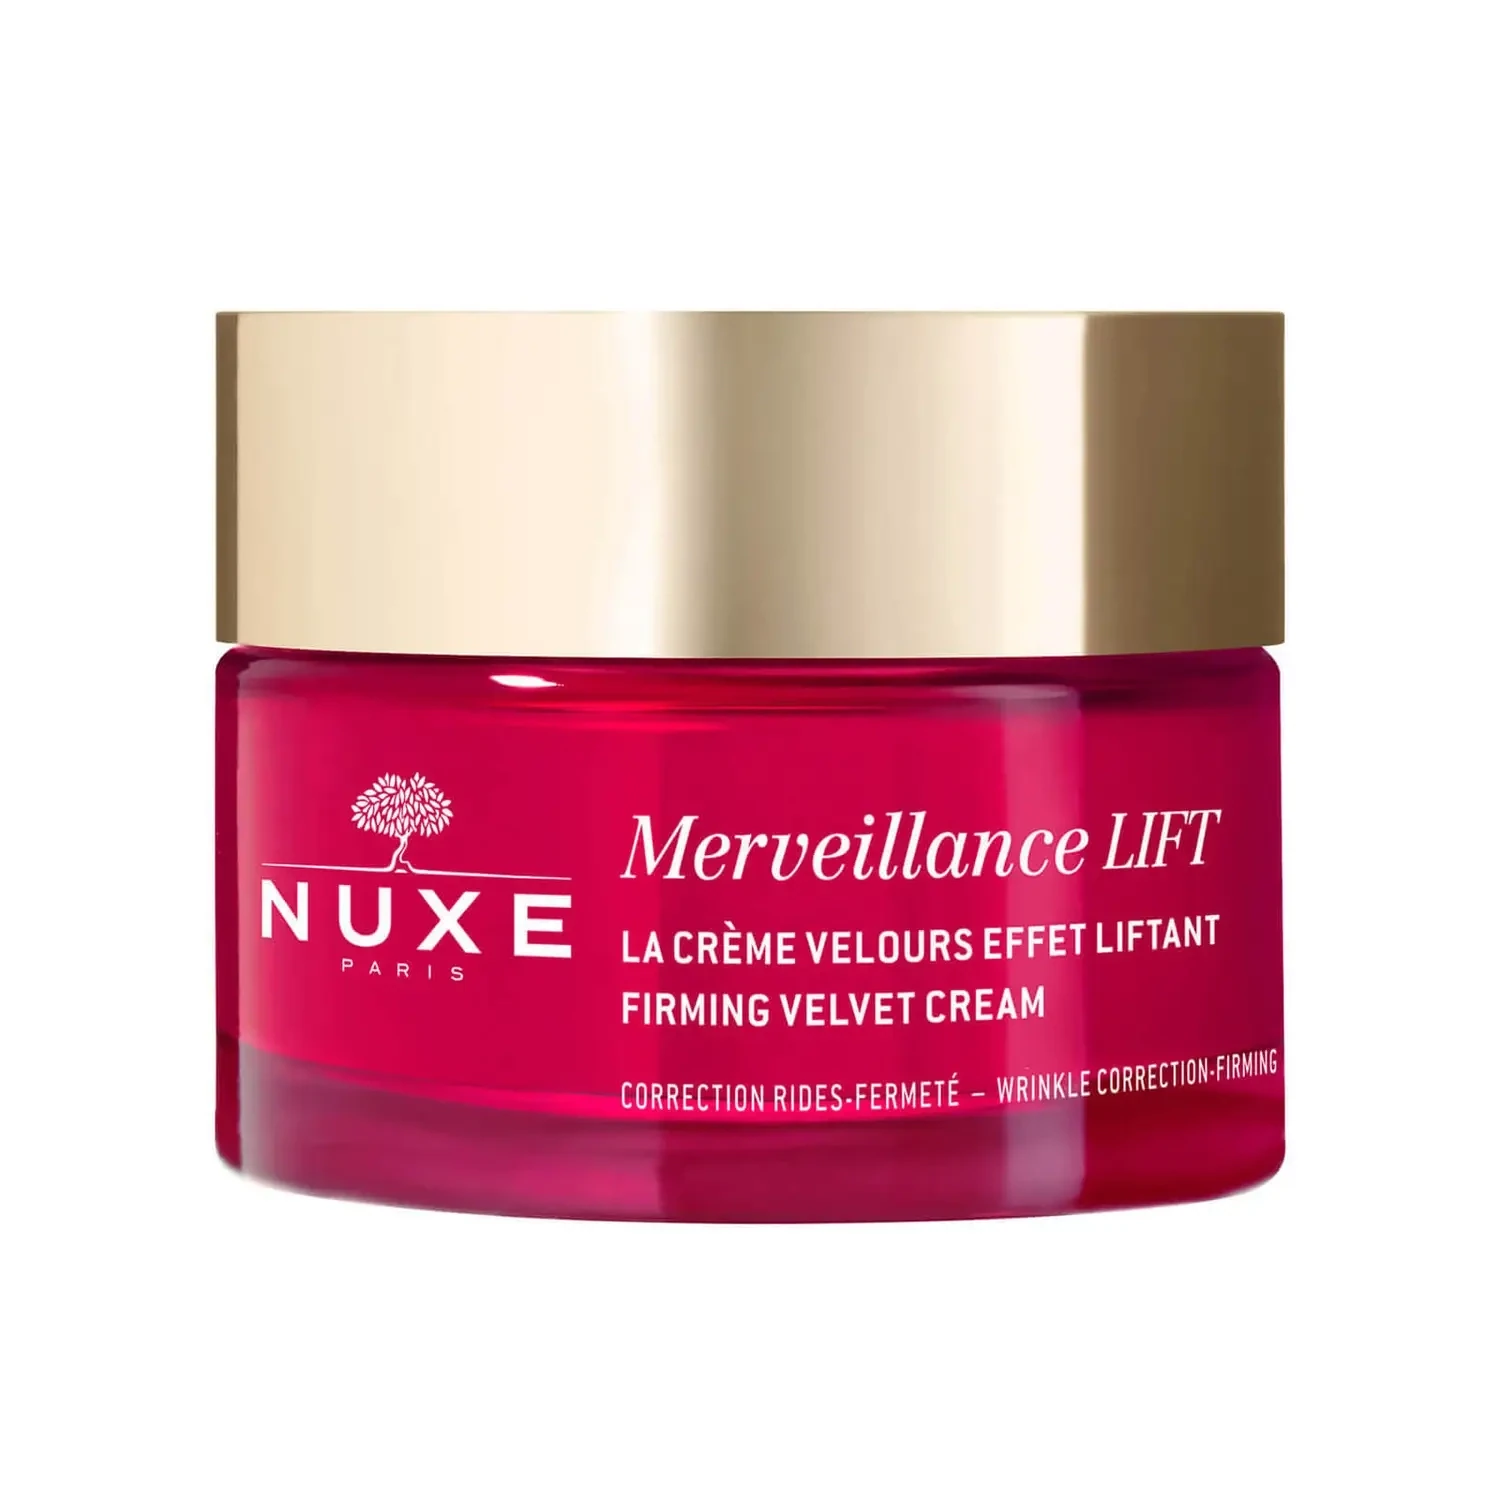 NUXE - Firming Velvet Cream, Merveillance Lift | 50 mL